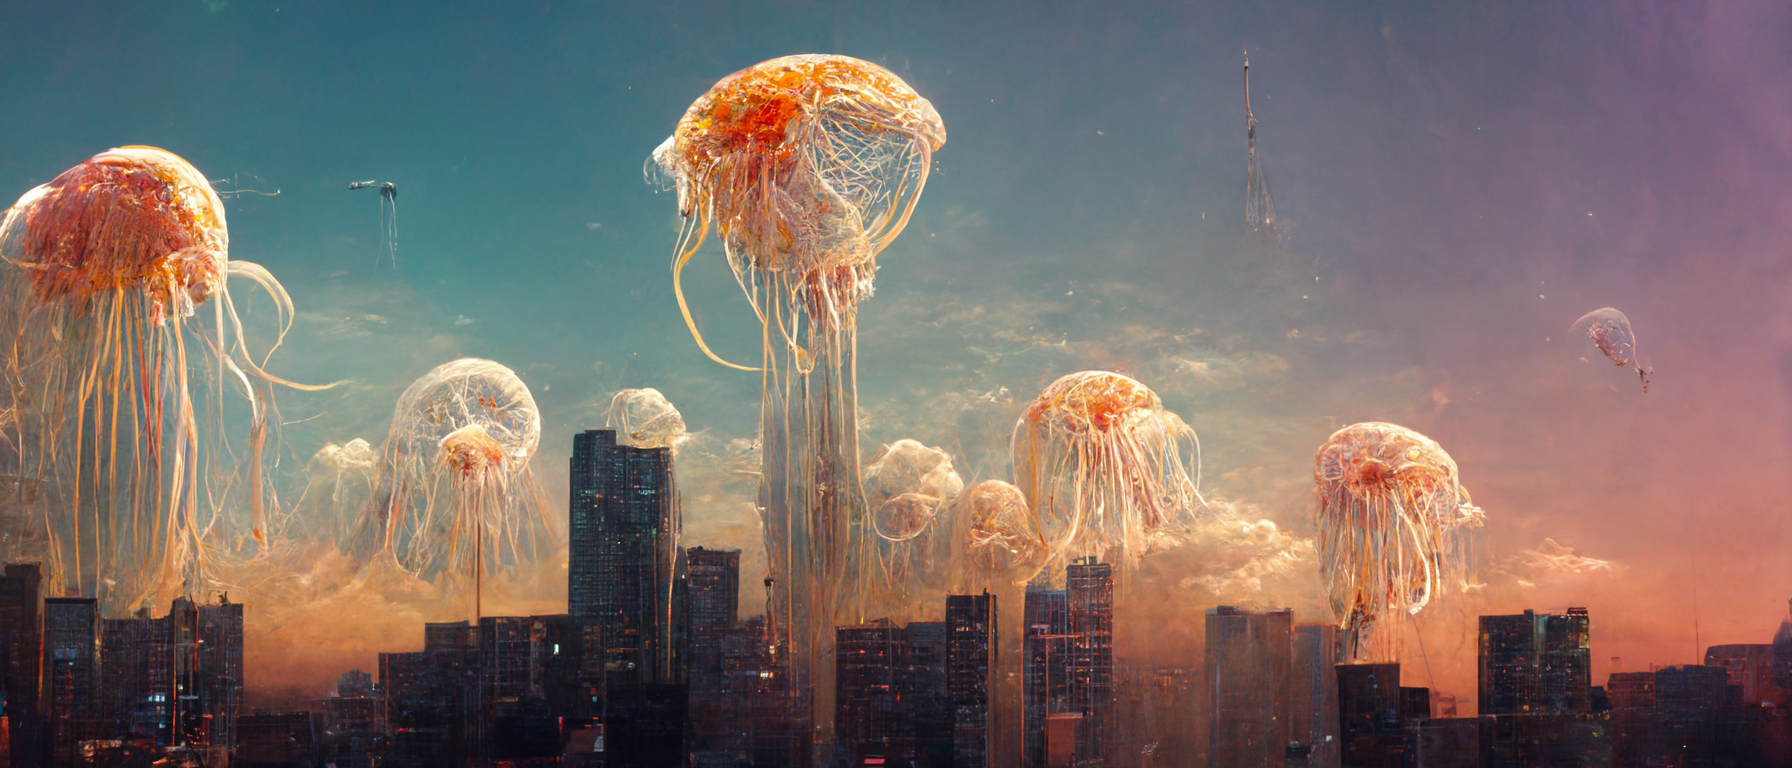 vibe_giant_jellyfish_flying_over_a_city_city_skyline_buildings__7875c3d0-e340-477f-a44a-9f2b8709da92